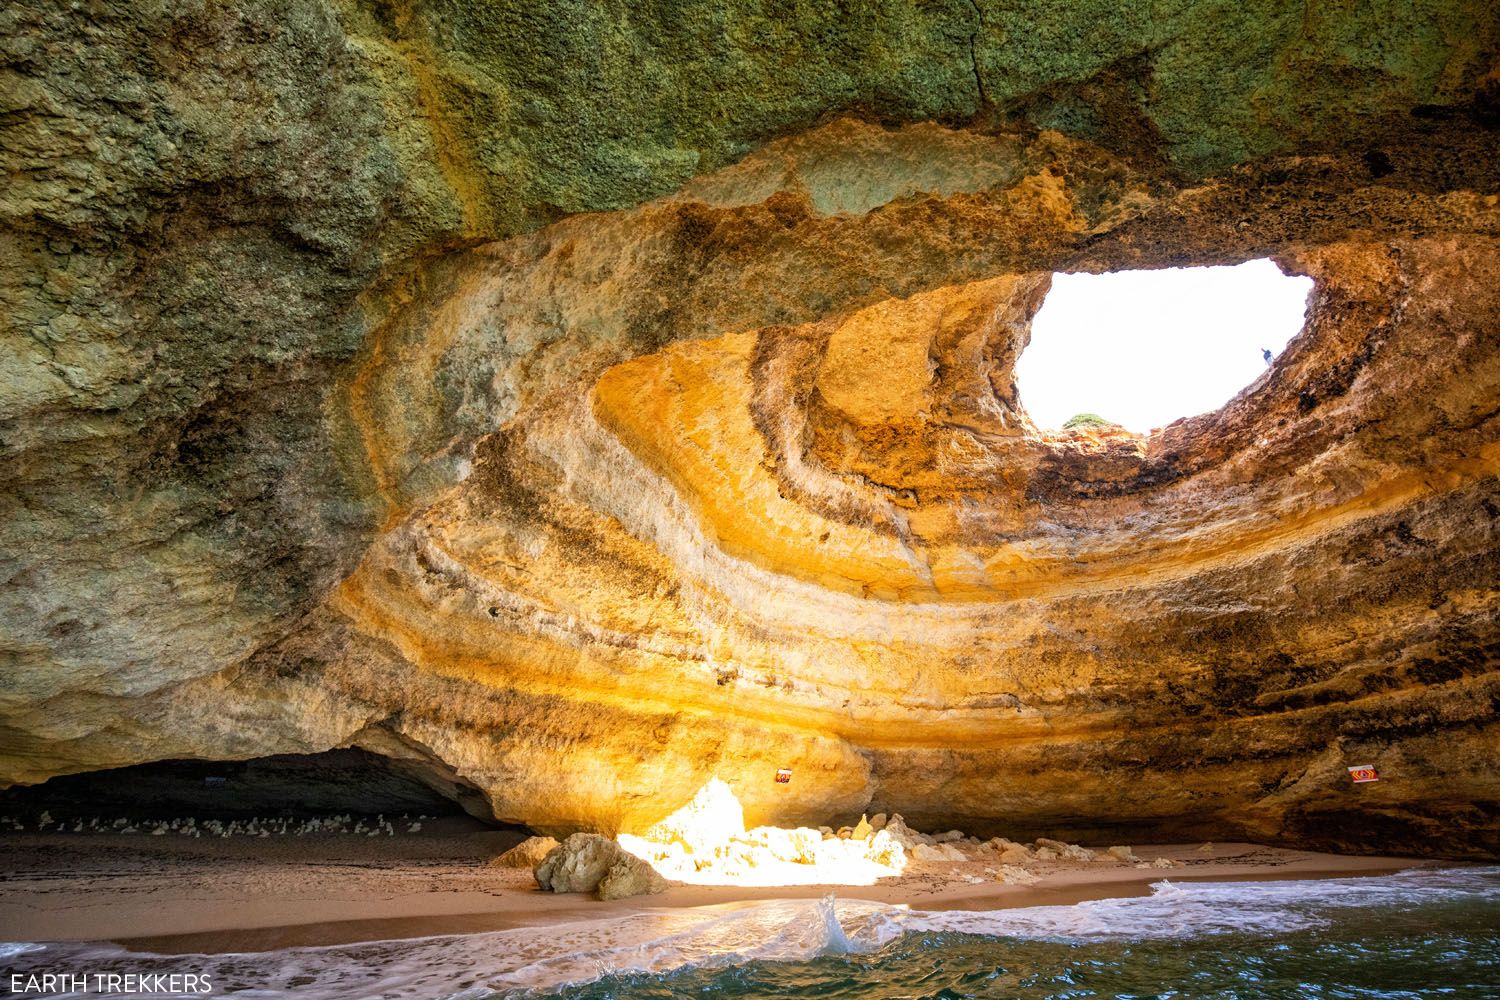 Benagil Cave